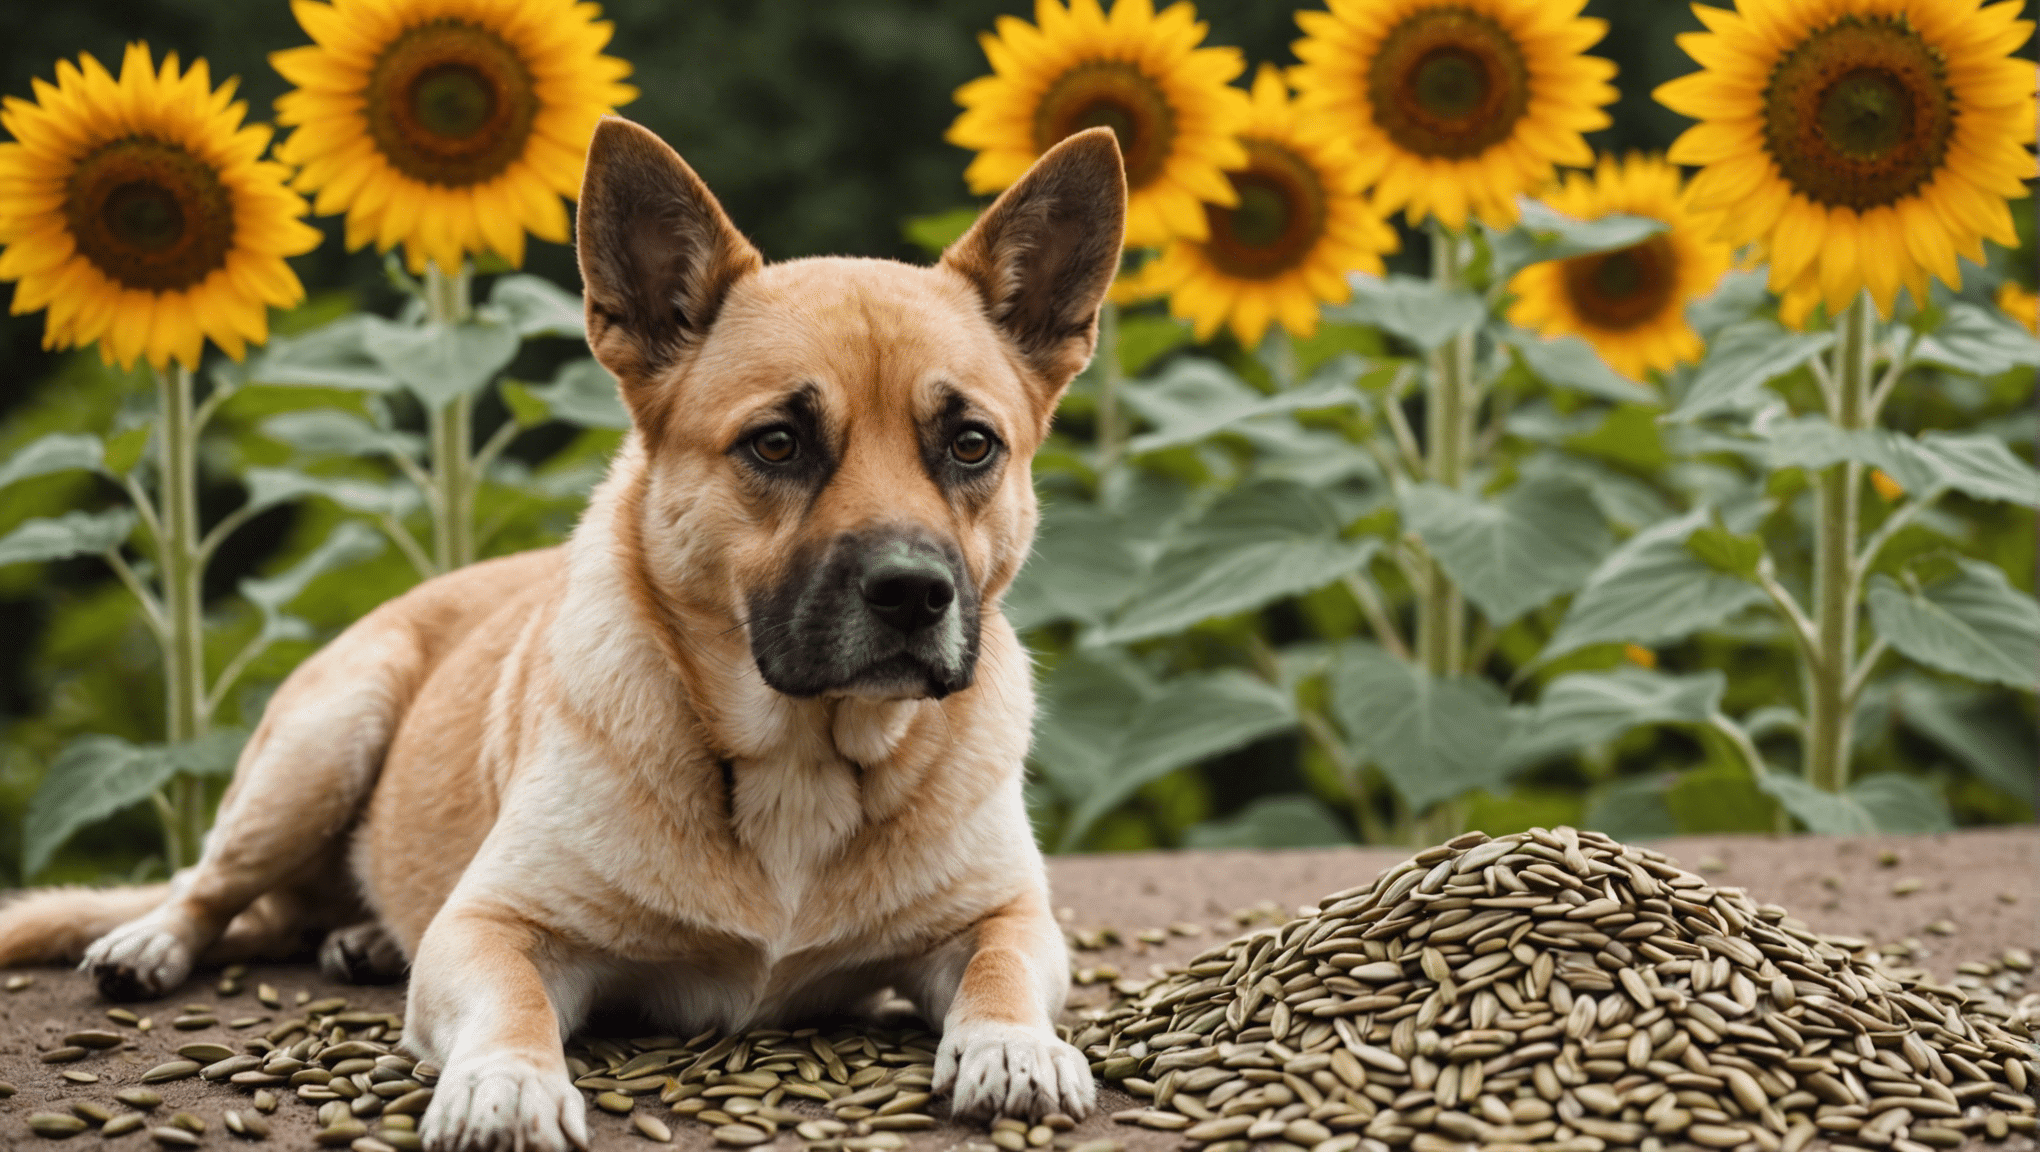 Ontdek of zonnebloempitten veilig zijn voor honden om te eten en leer over de mogelijke risico's en voordelen voor uw hond.